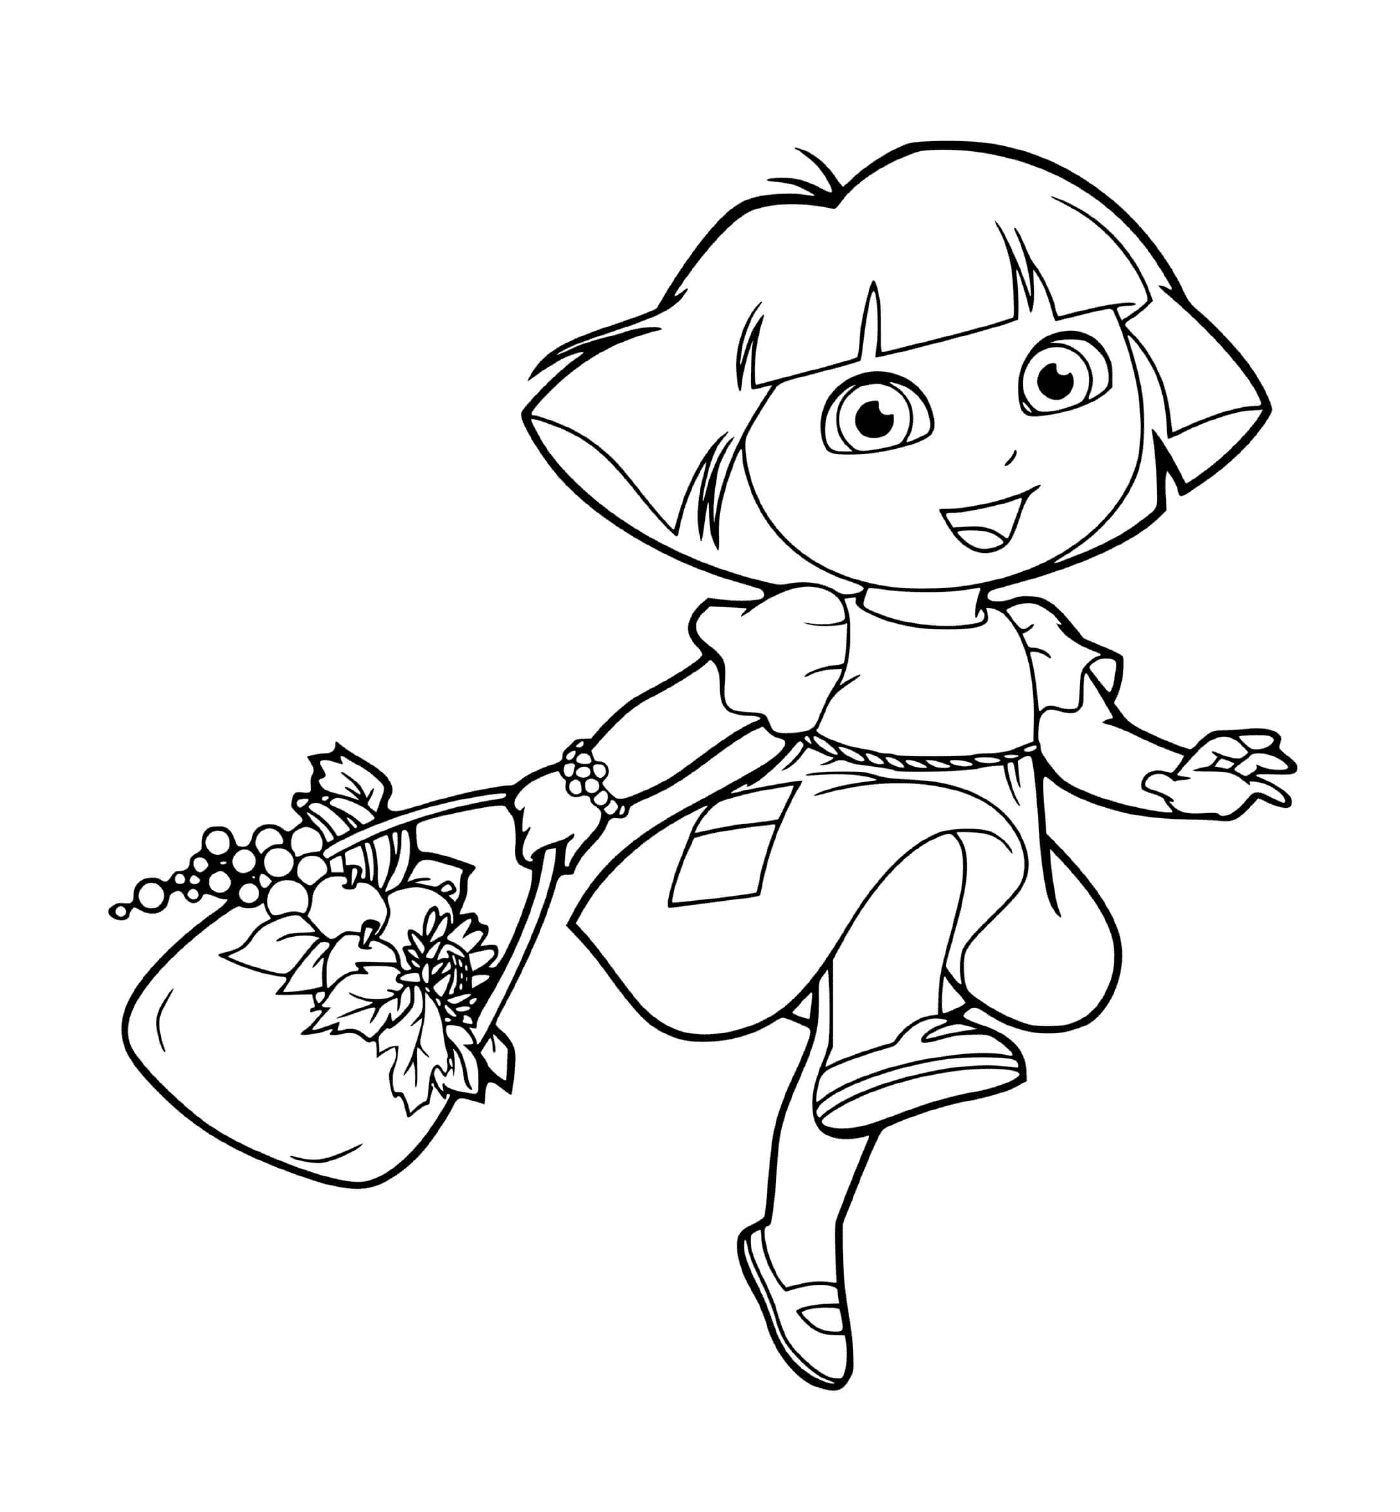   Dora récolte des fruits et légumes avec soin 